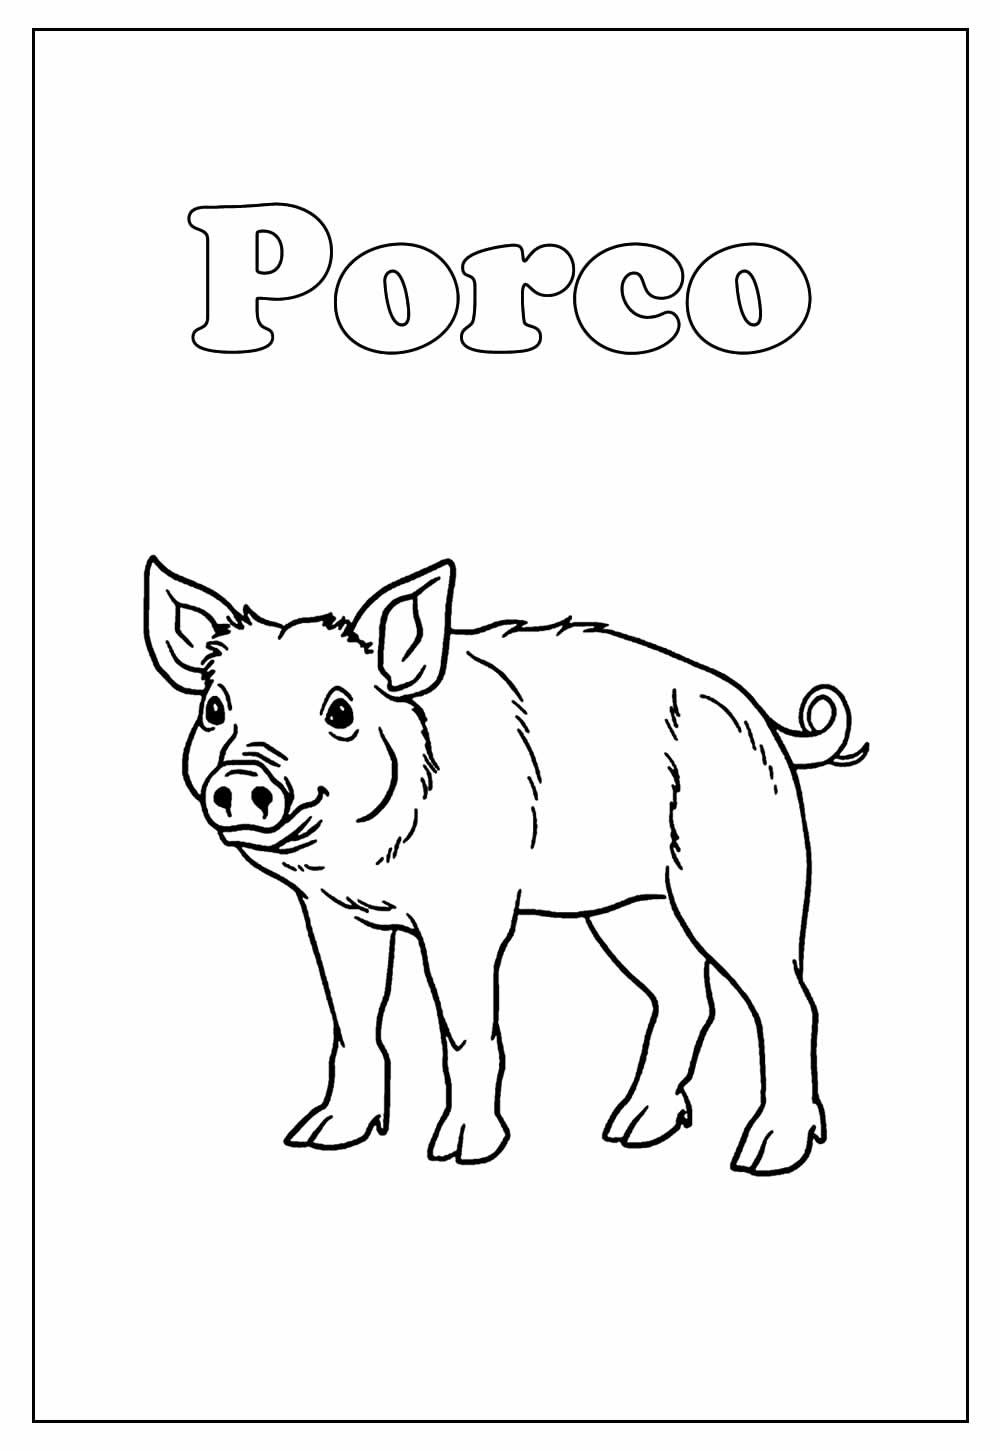 Desenho de Porco para colorir